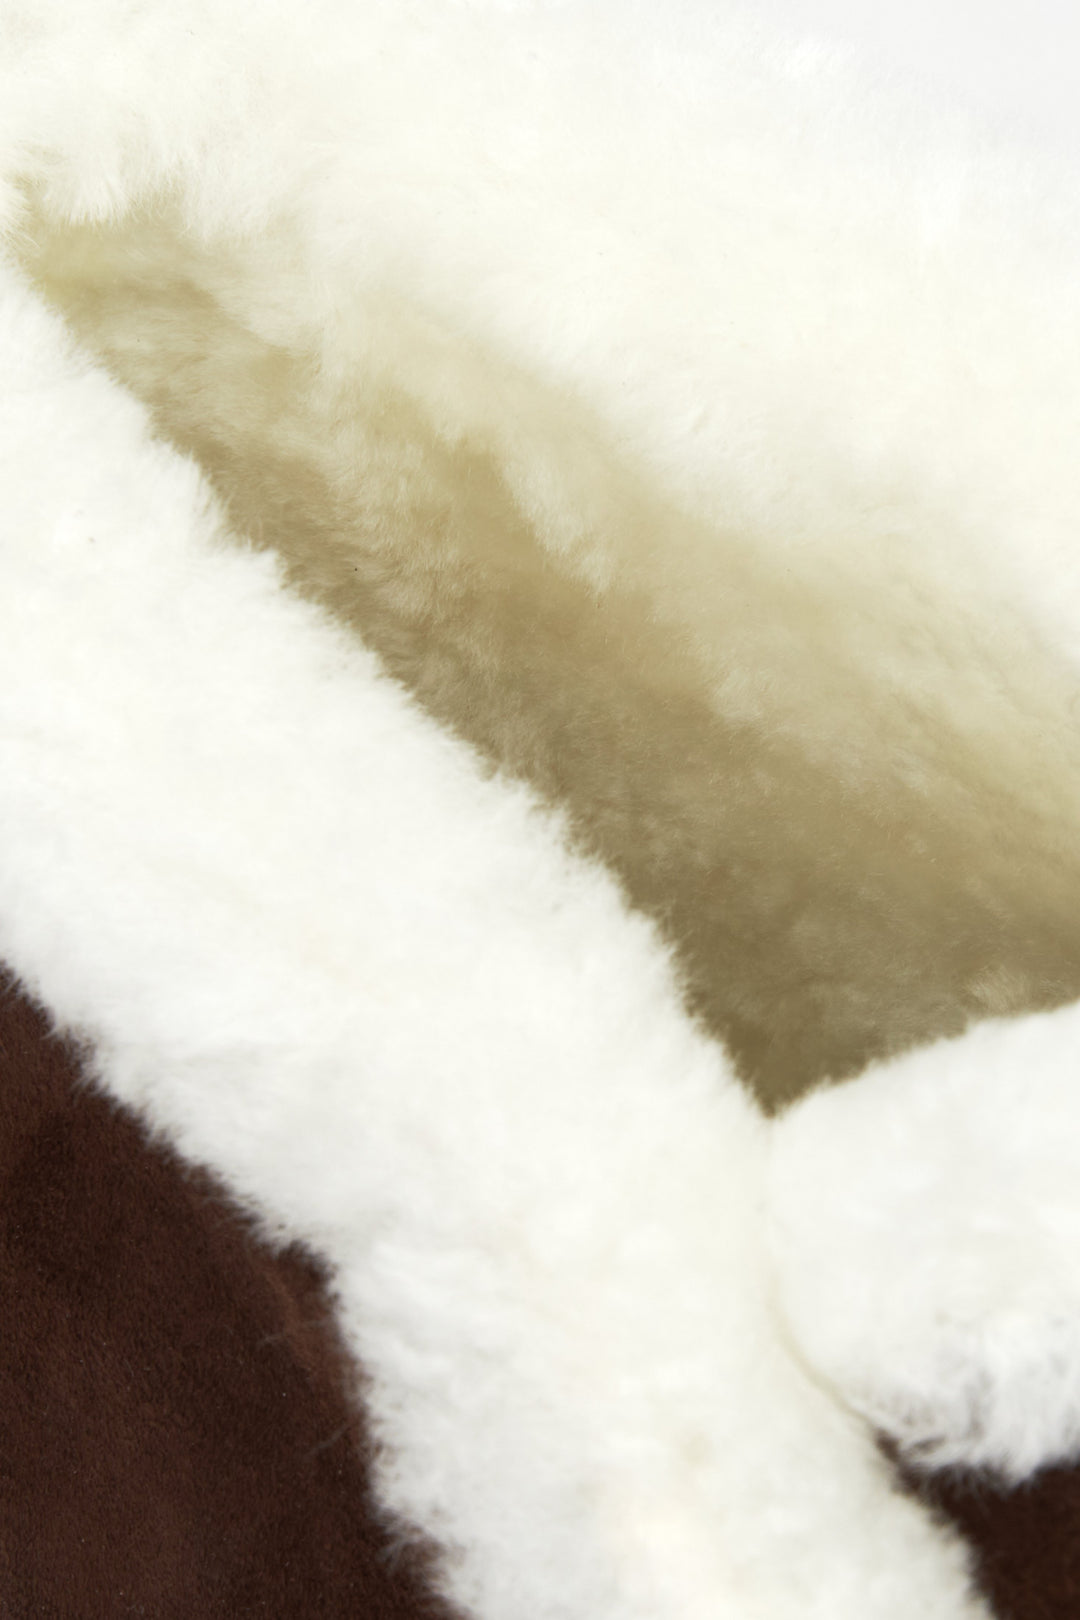 Damskie mokasyny zimowe w kolorze brązowym - zbliżenie na ciepły, futrzany wsad.